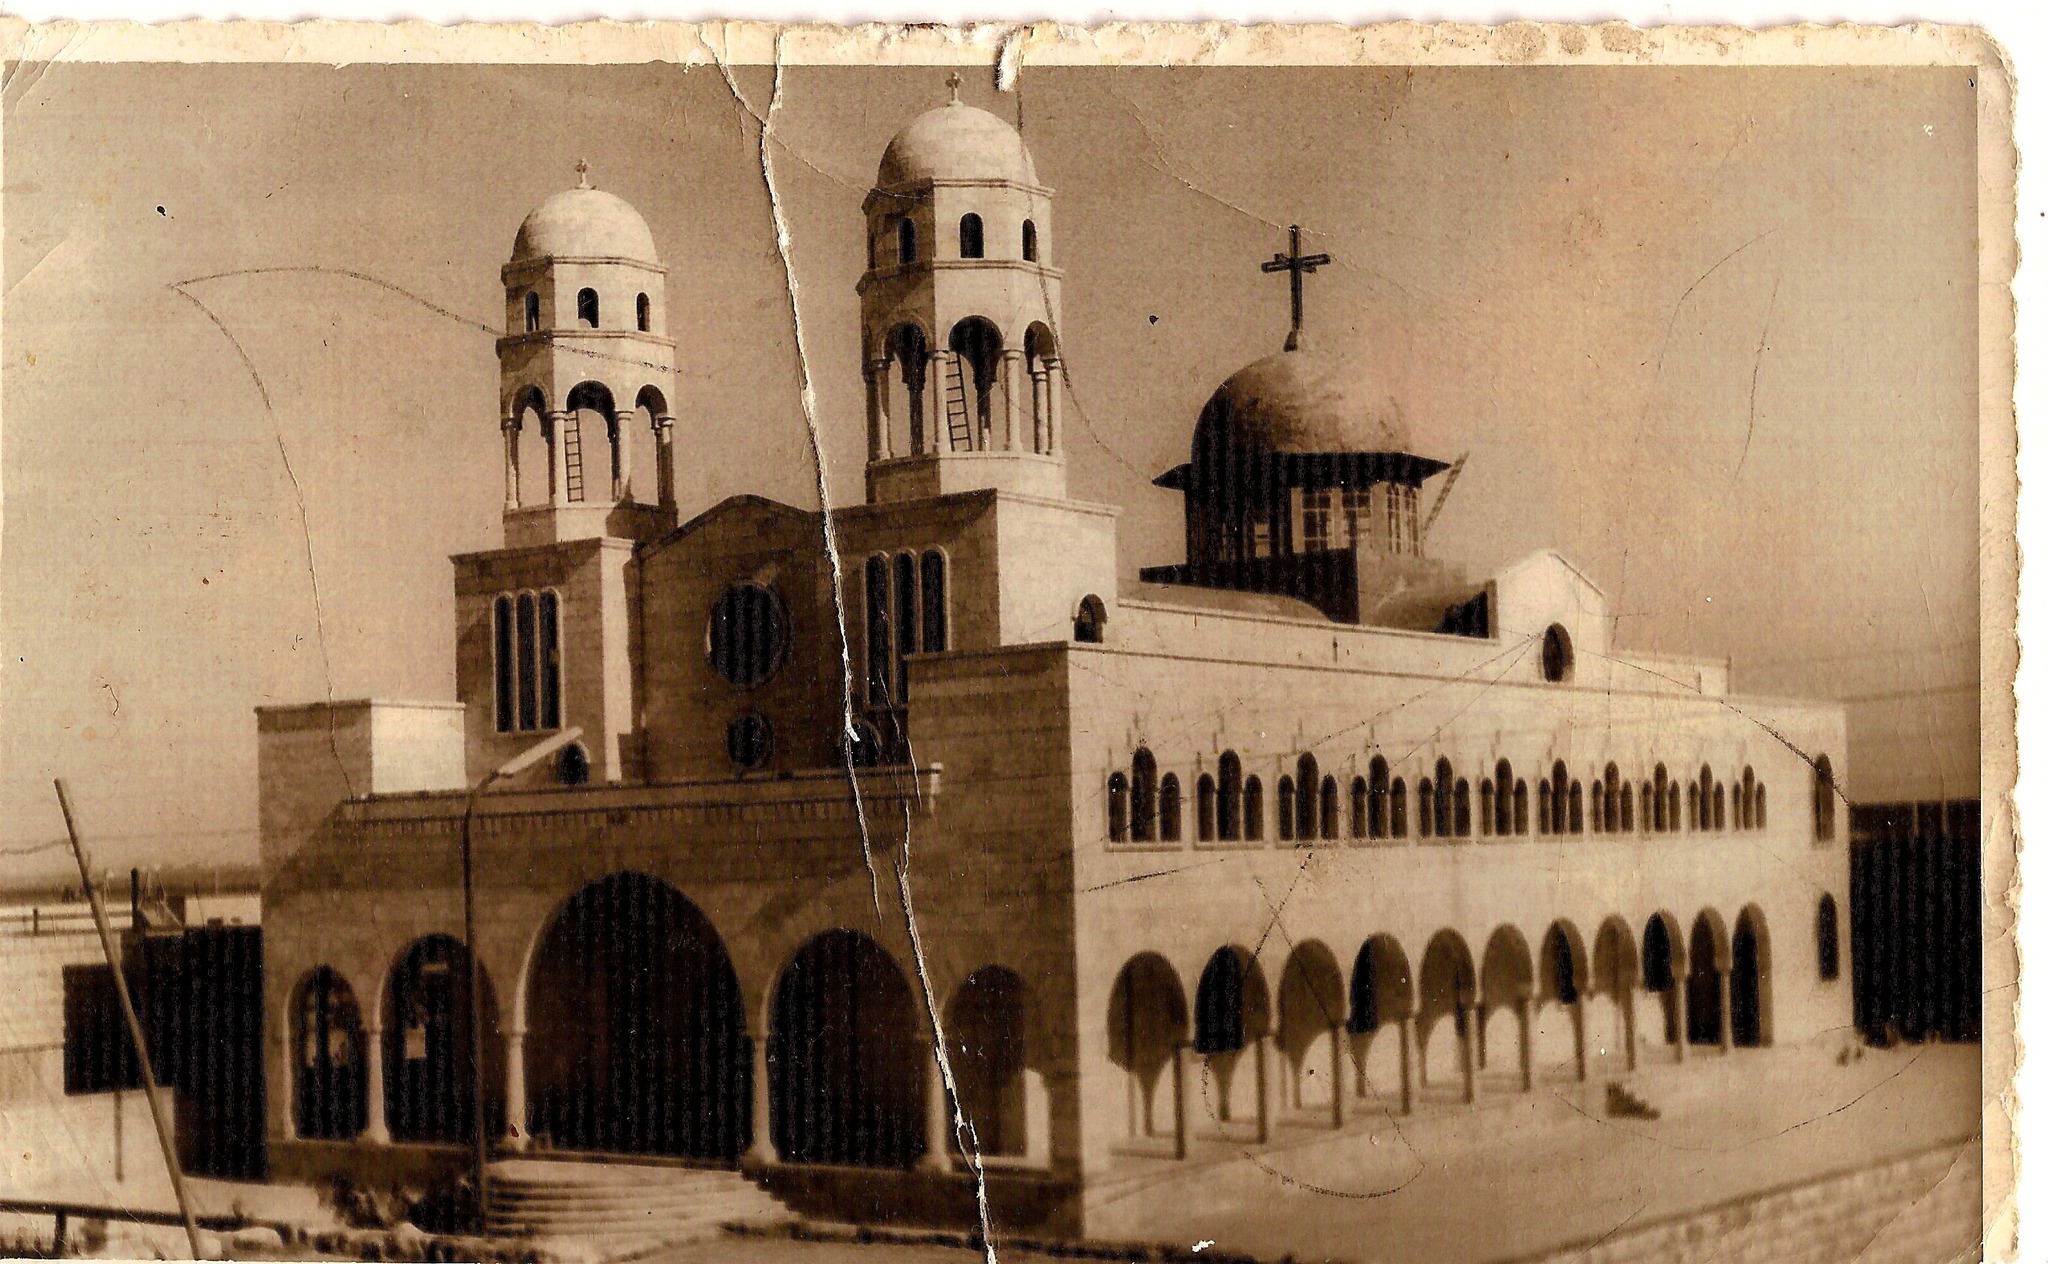 التاريخ السوري المعاصر - كنيسة جاورجيوس في محردة عام 1970م